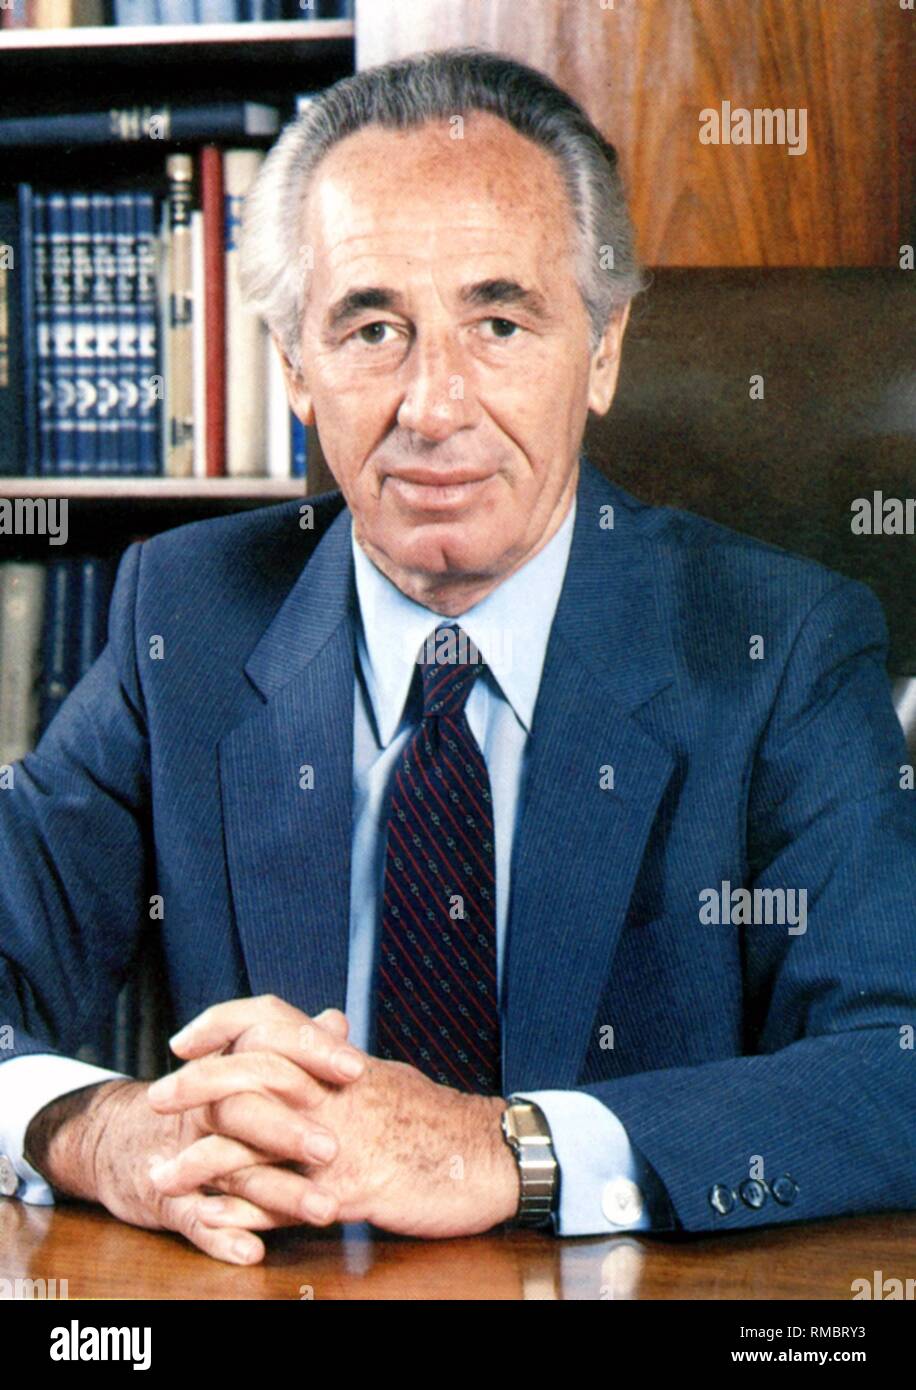 Shimon Peres - * 02.08.1923 - Portrait du président de l'état d'Israël à son bureau pendant son mandat en tant que premier ministre de 1984 à 1986, il a servi comme Premier ministre de 1995 à 1996. Photo non datée de 1985. Banque D'Images